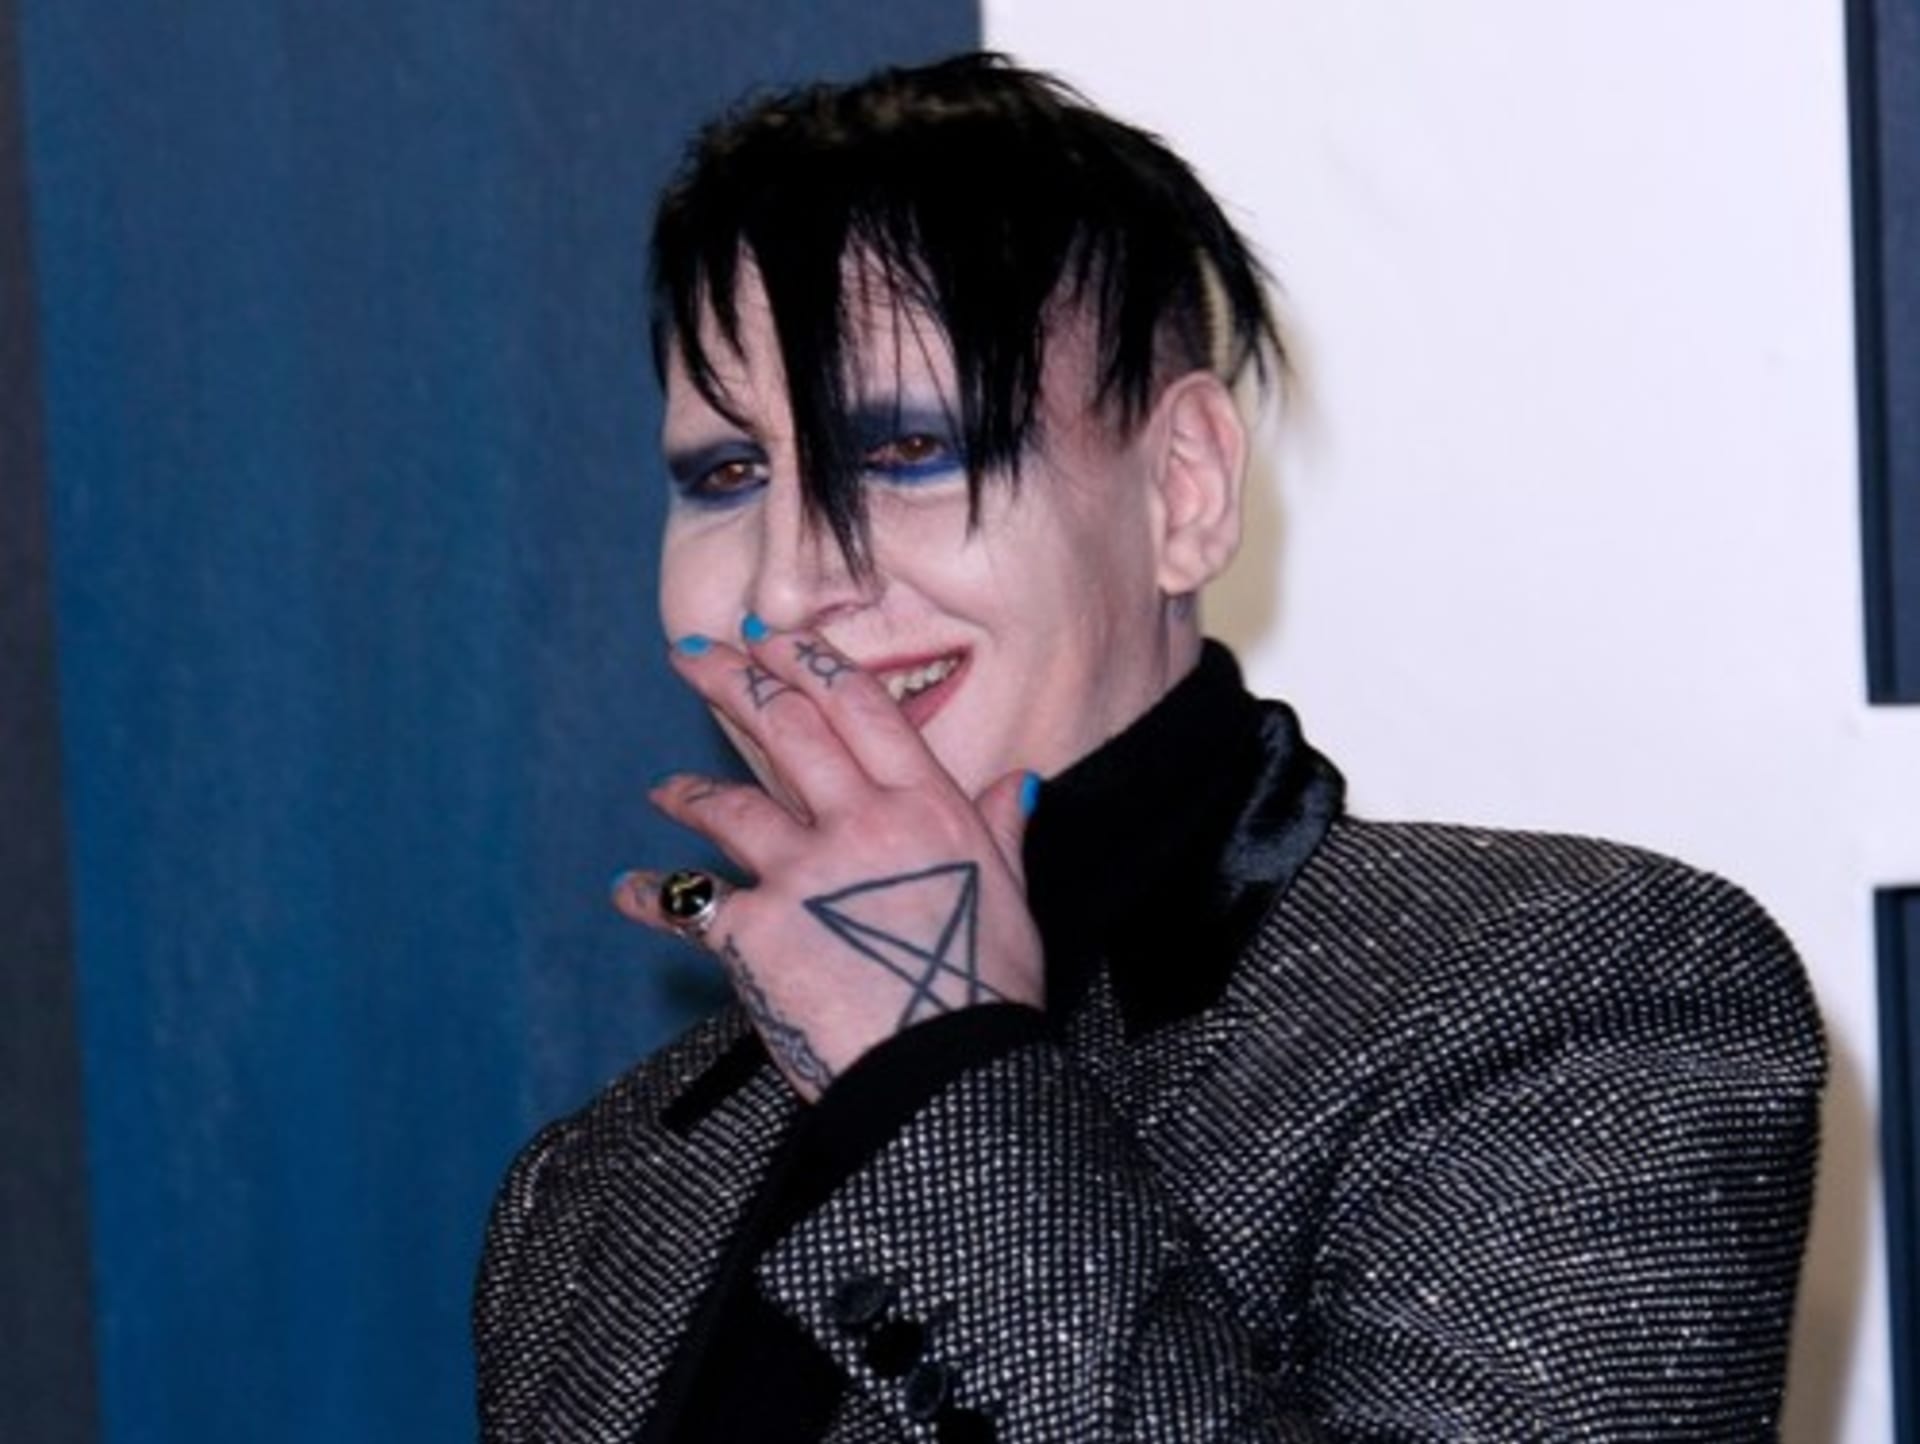 Policie vydala zatykač na Marilyna Mansona 1